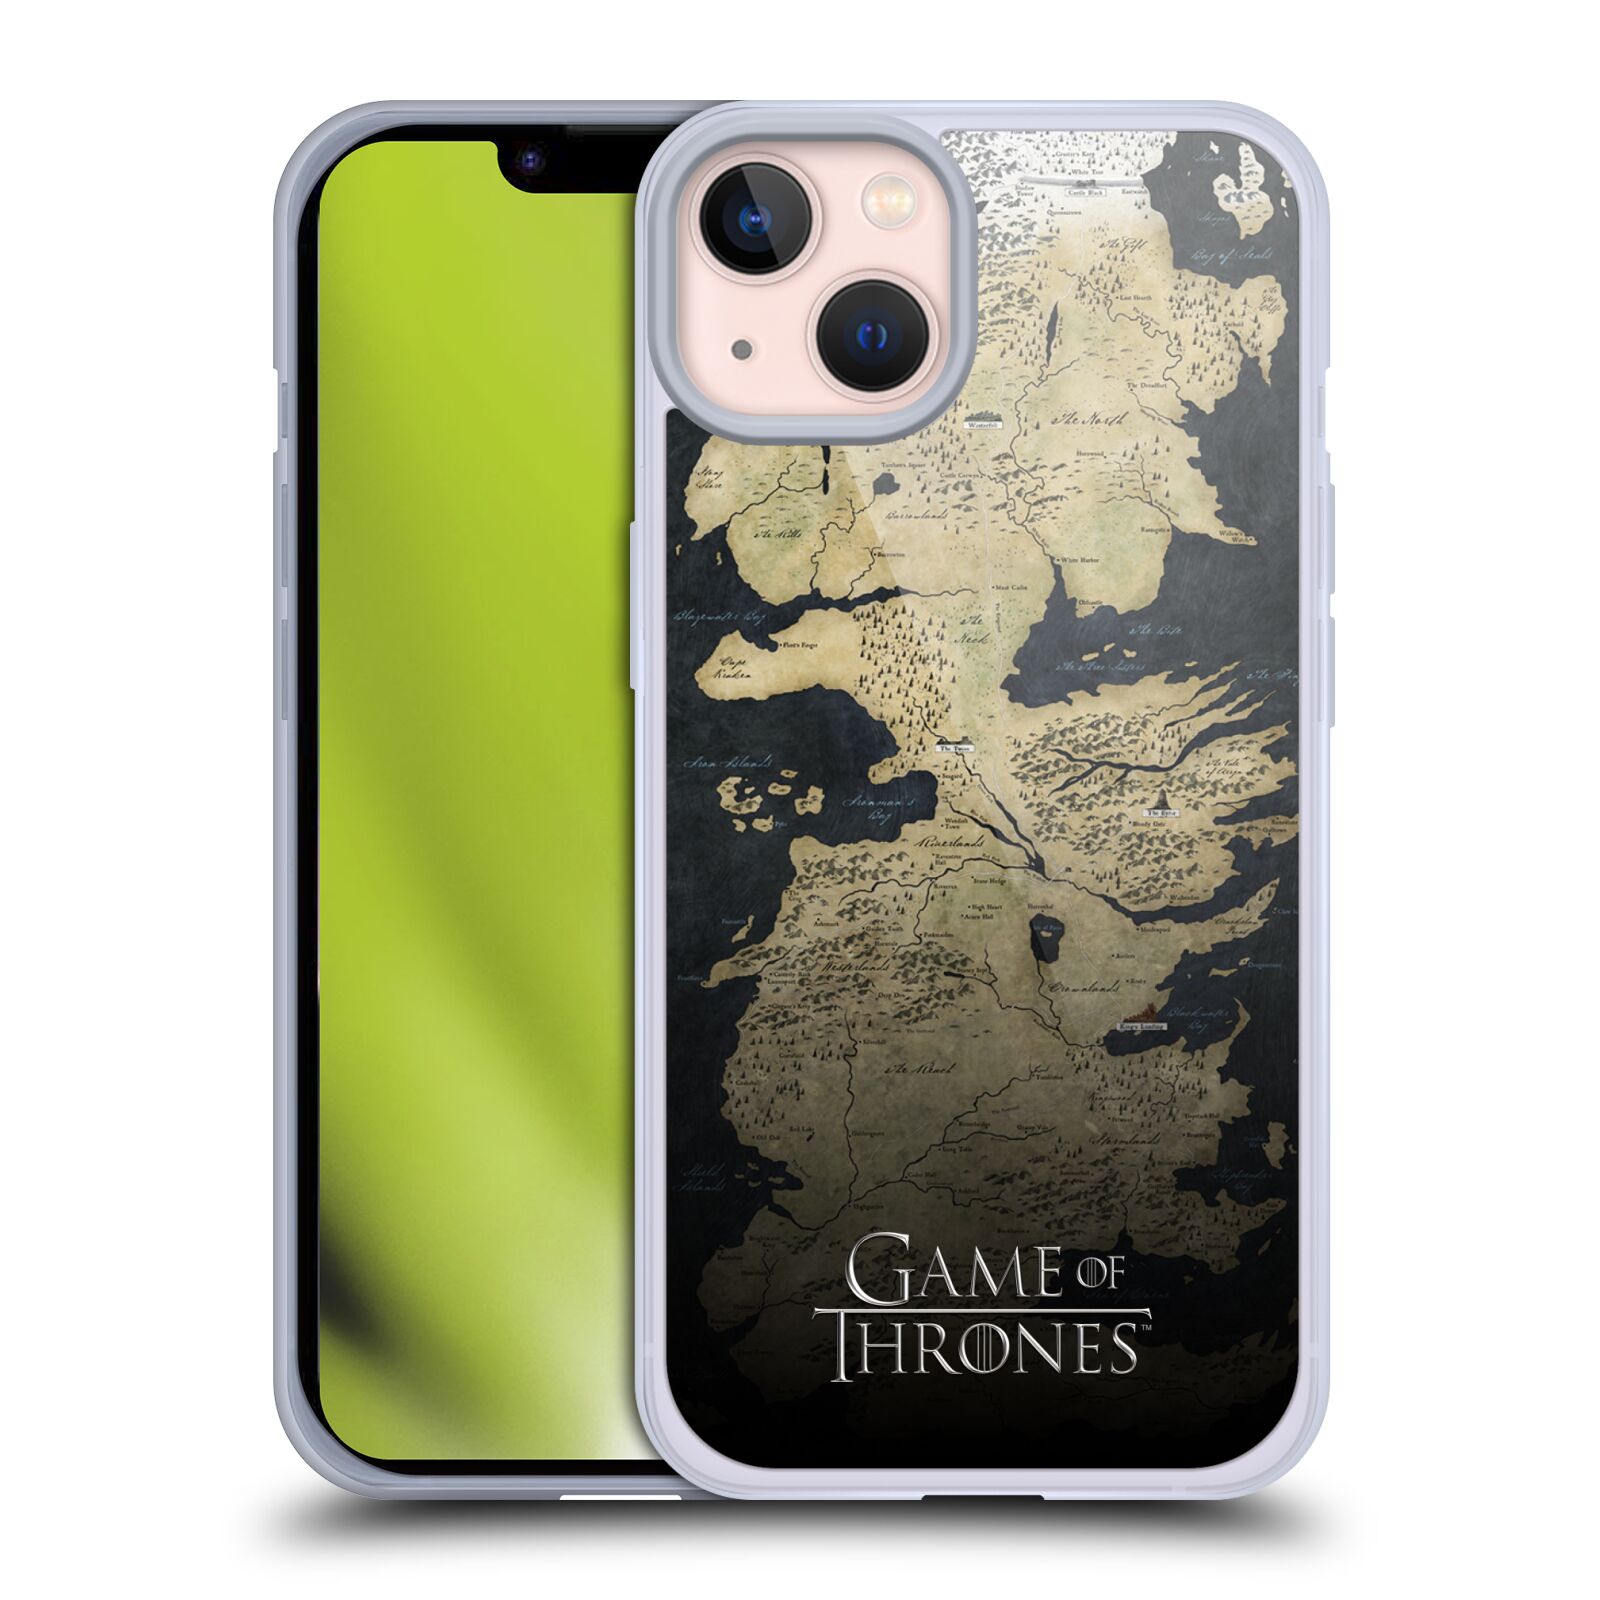 Silikonové pouzdro na mobil Apple iPhone 13 - Head Case - Hra o trůny - Mapa západozemí (Silikonový kryt, obal, pouzdro na mobilní telefon Apple iPhone 13 s motivem Hra o trůny - Mapa západozemí)